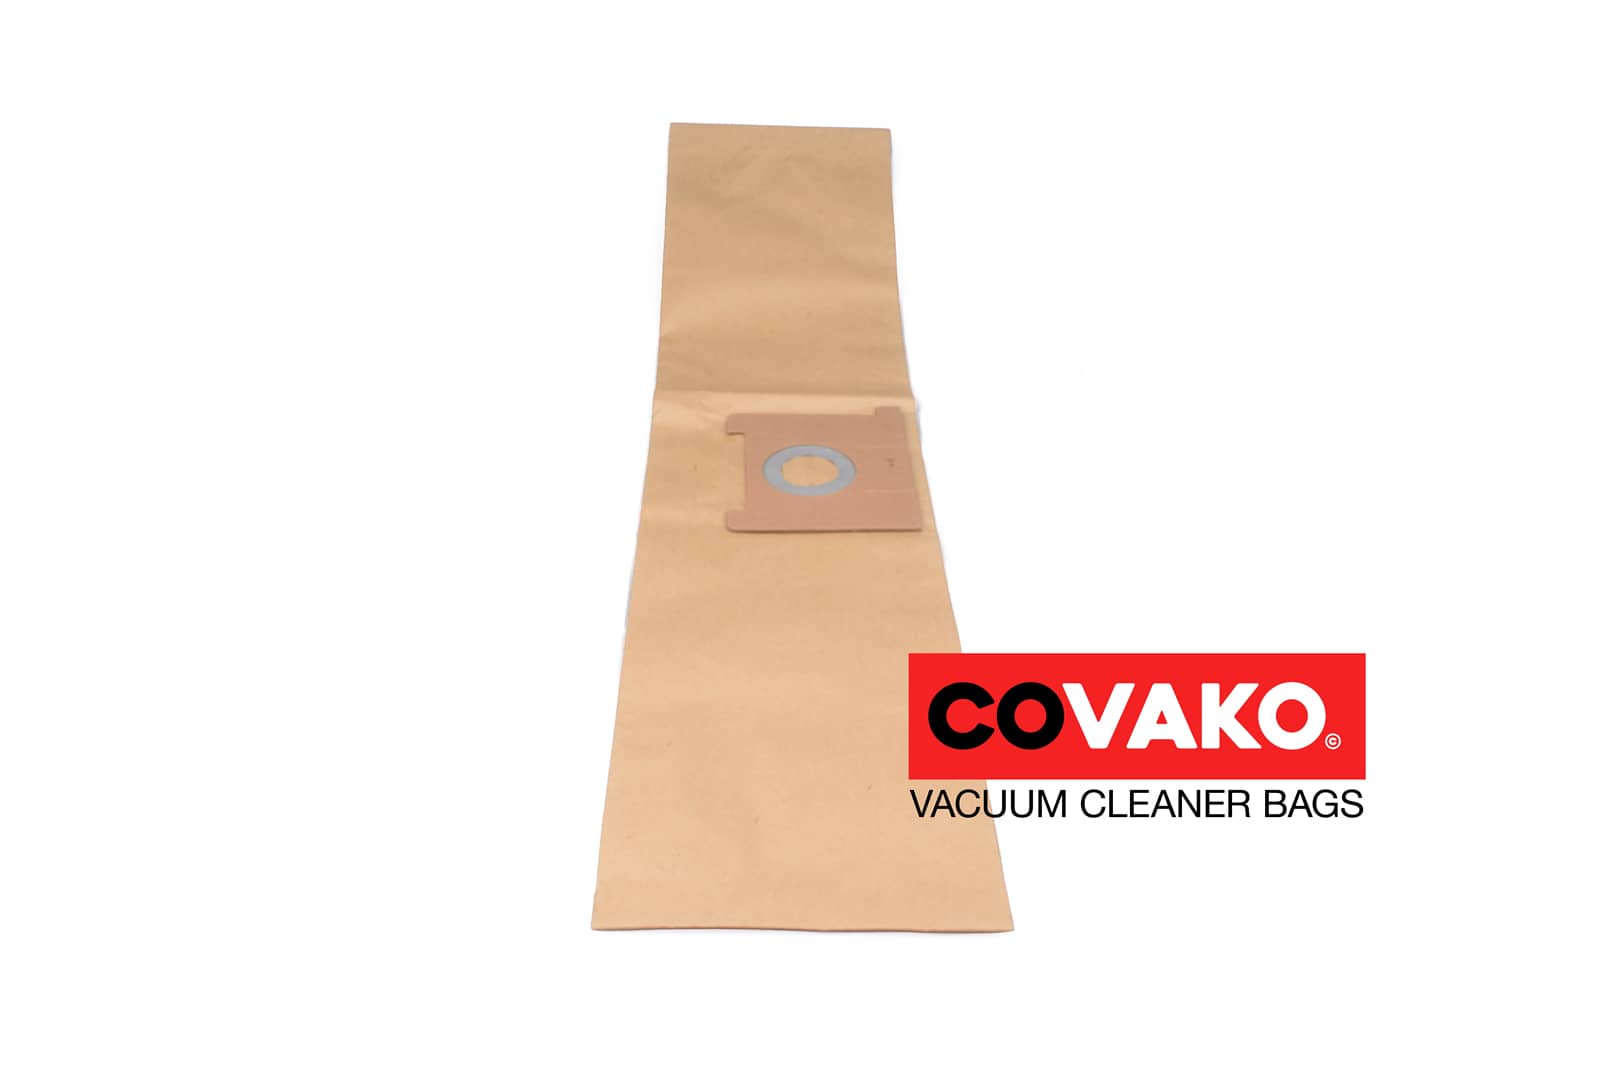 I-vac pur Q XL / Paper - I-vac vacuum cleaner bags